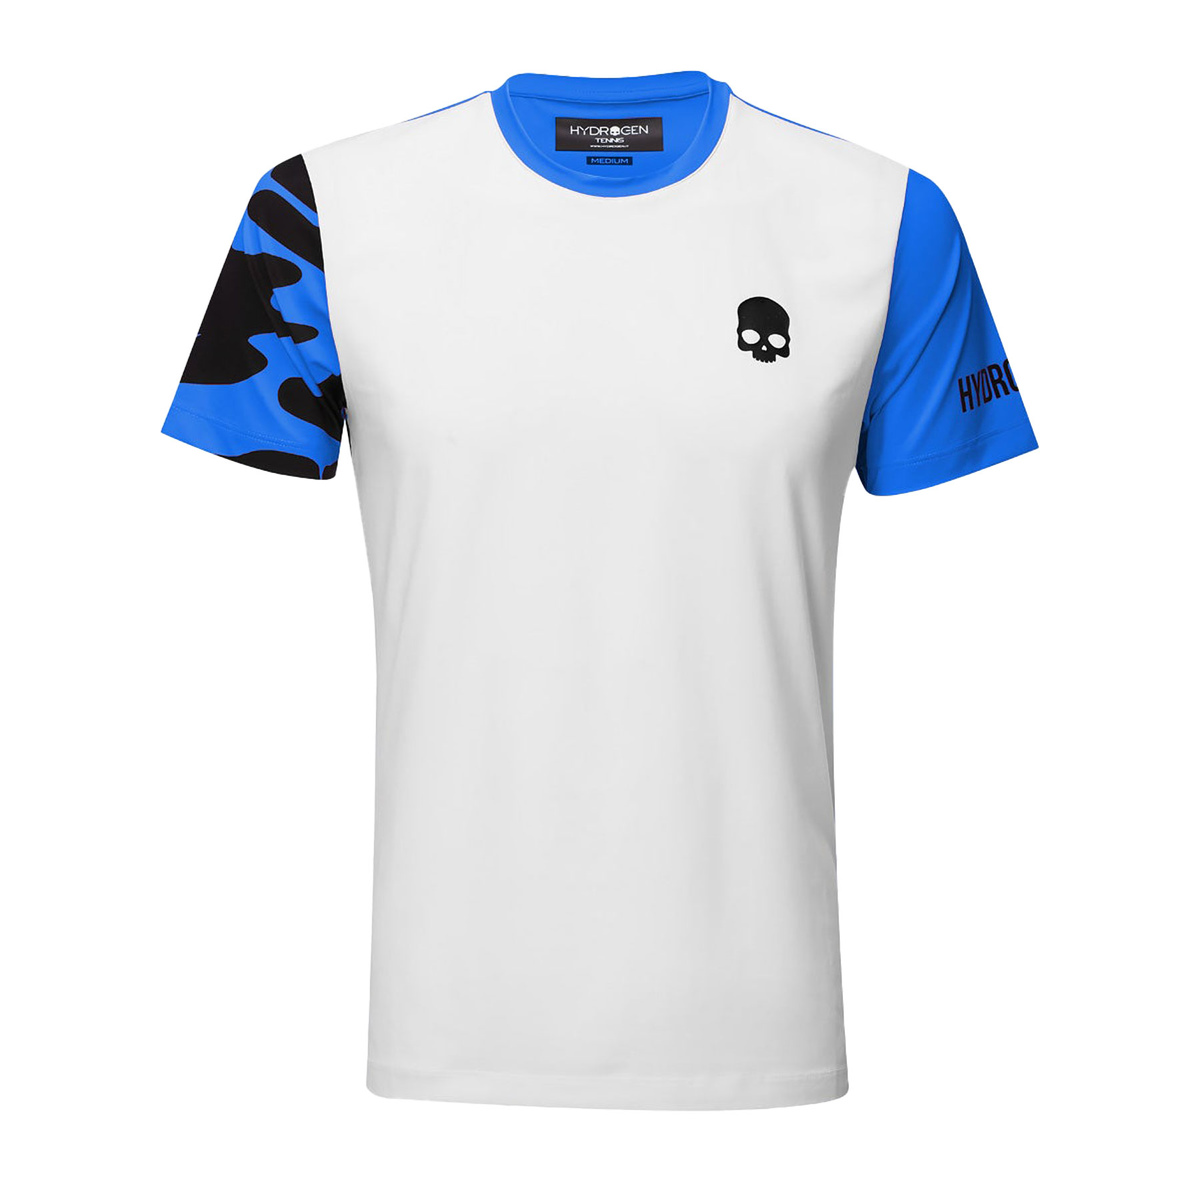 Hydrogen T-shirt tech camo